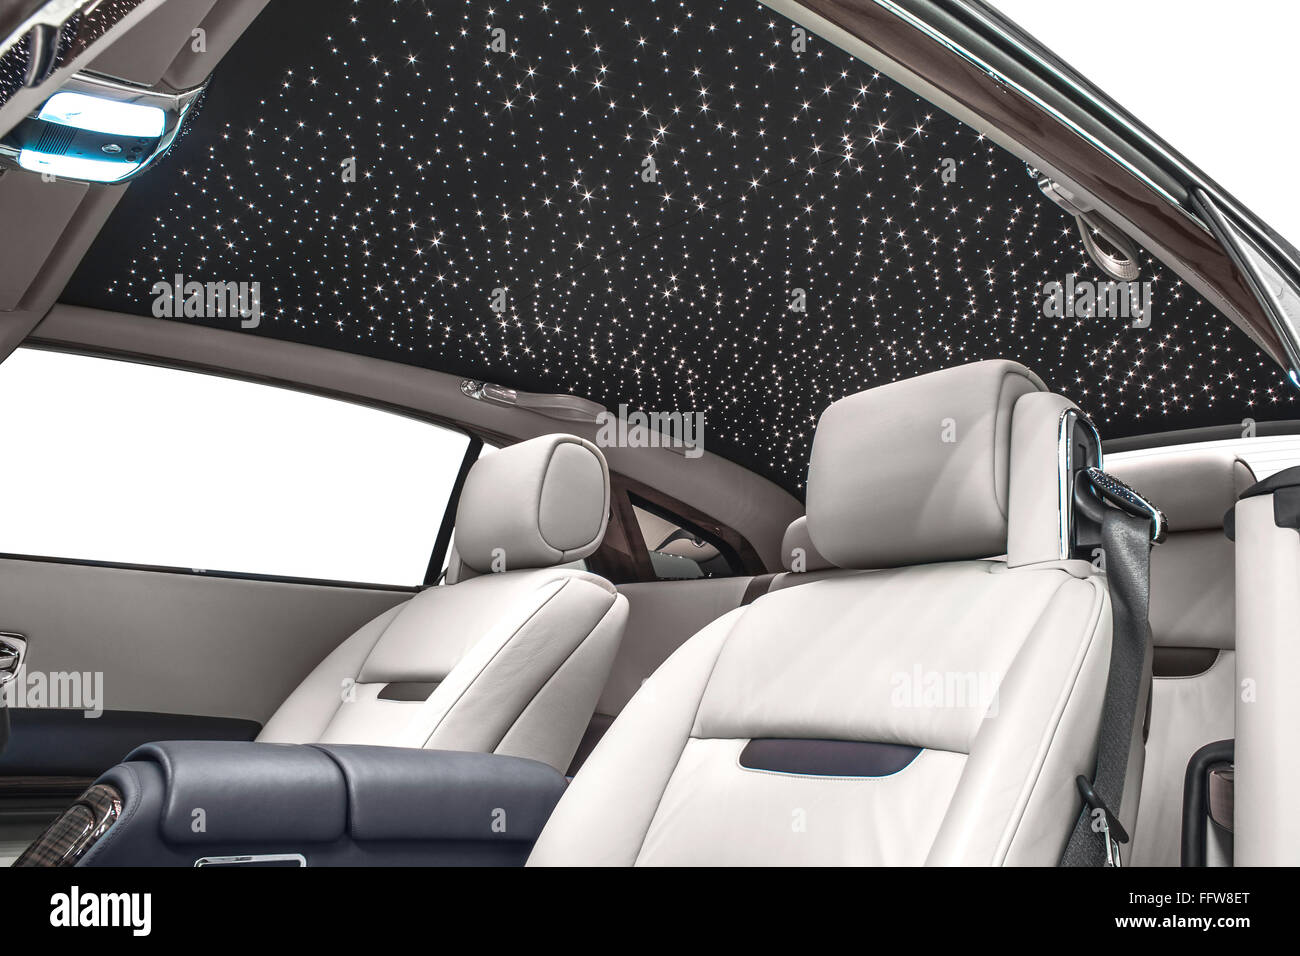 Auto Innenraum Luxus. Weißen Sitze & schwarzes Dach mit Sternen